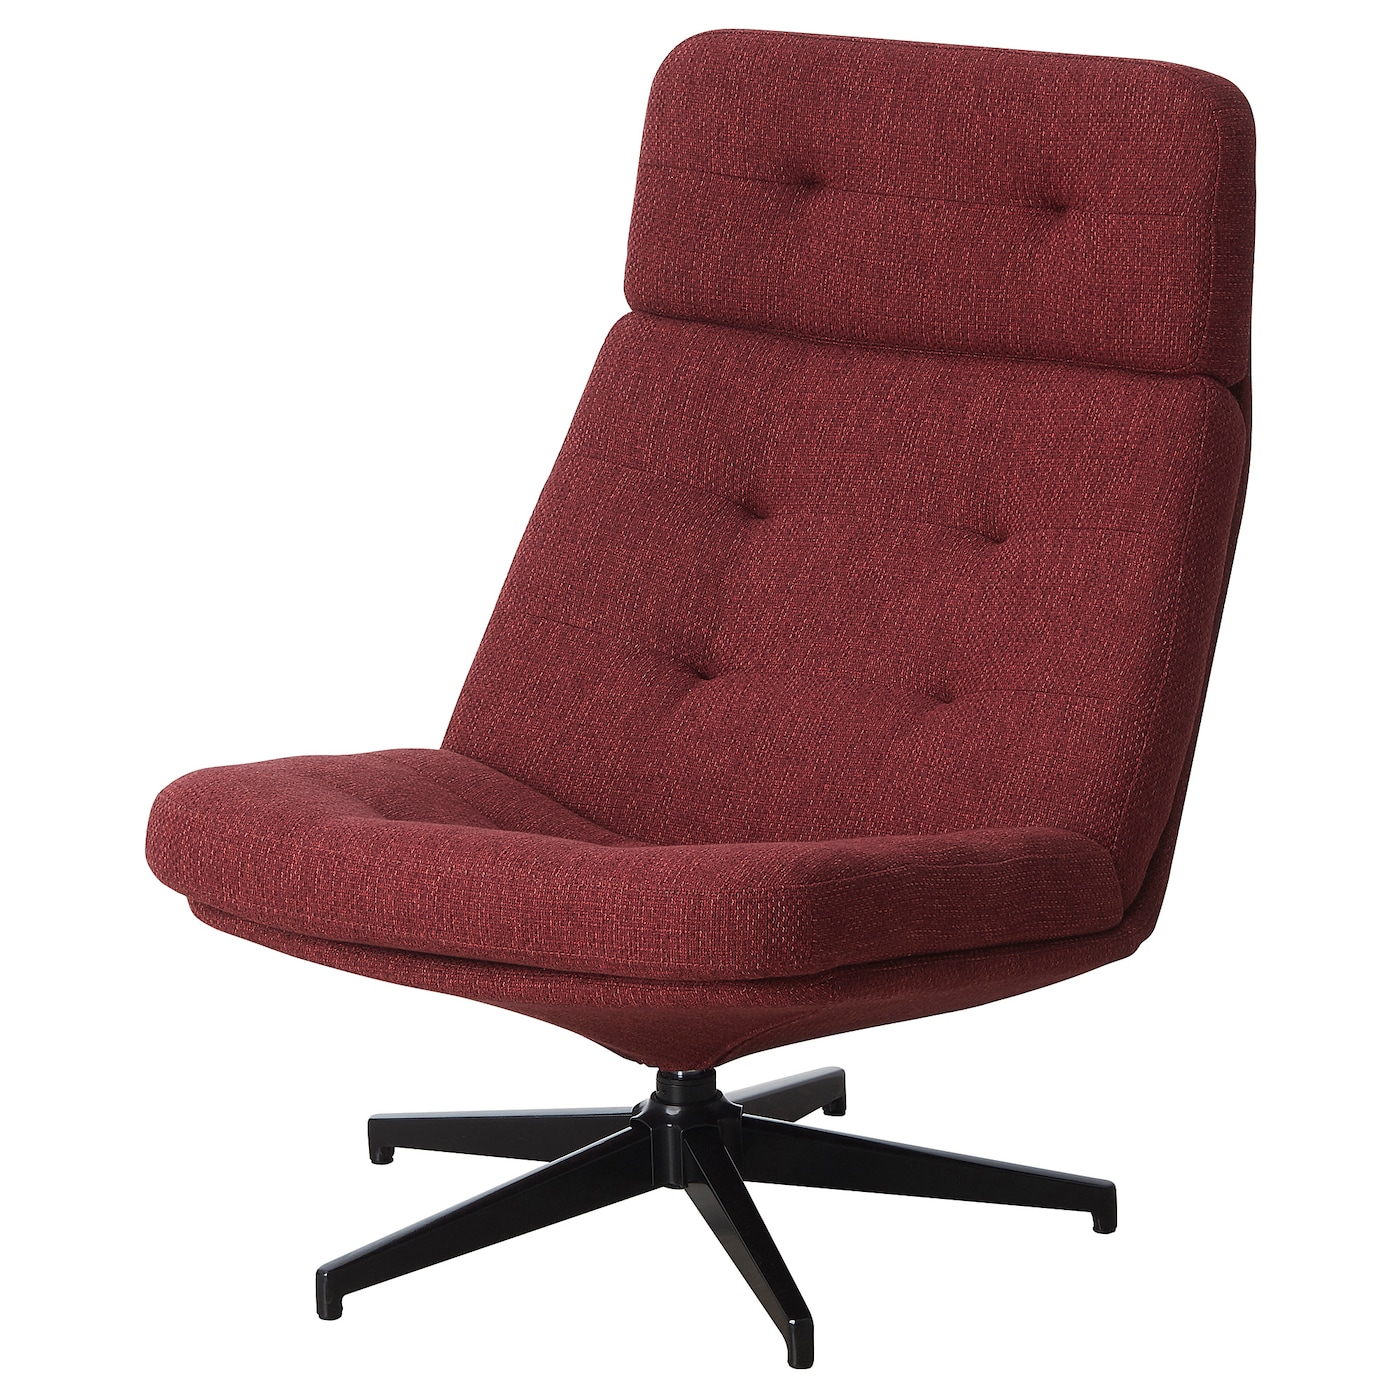 ХАВБЕРГ Вращающееся кресло, Лейде красно-коричневый HAVBERG IKEA компьютерное кресло gy офисное кресло студенческое учебное кресло подъемное небольшое вращающееся кресло удобное длинное сидение прост